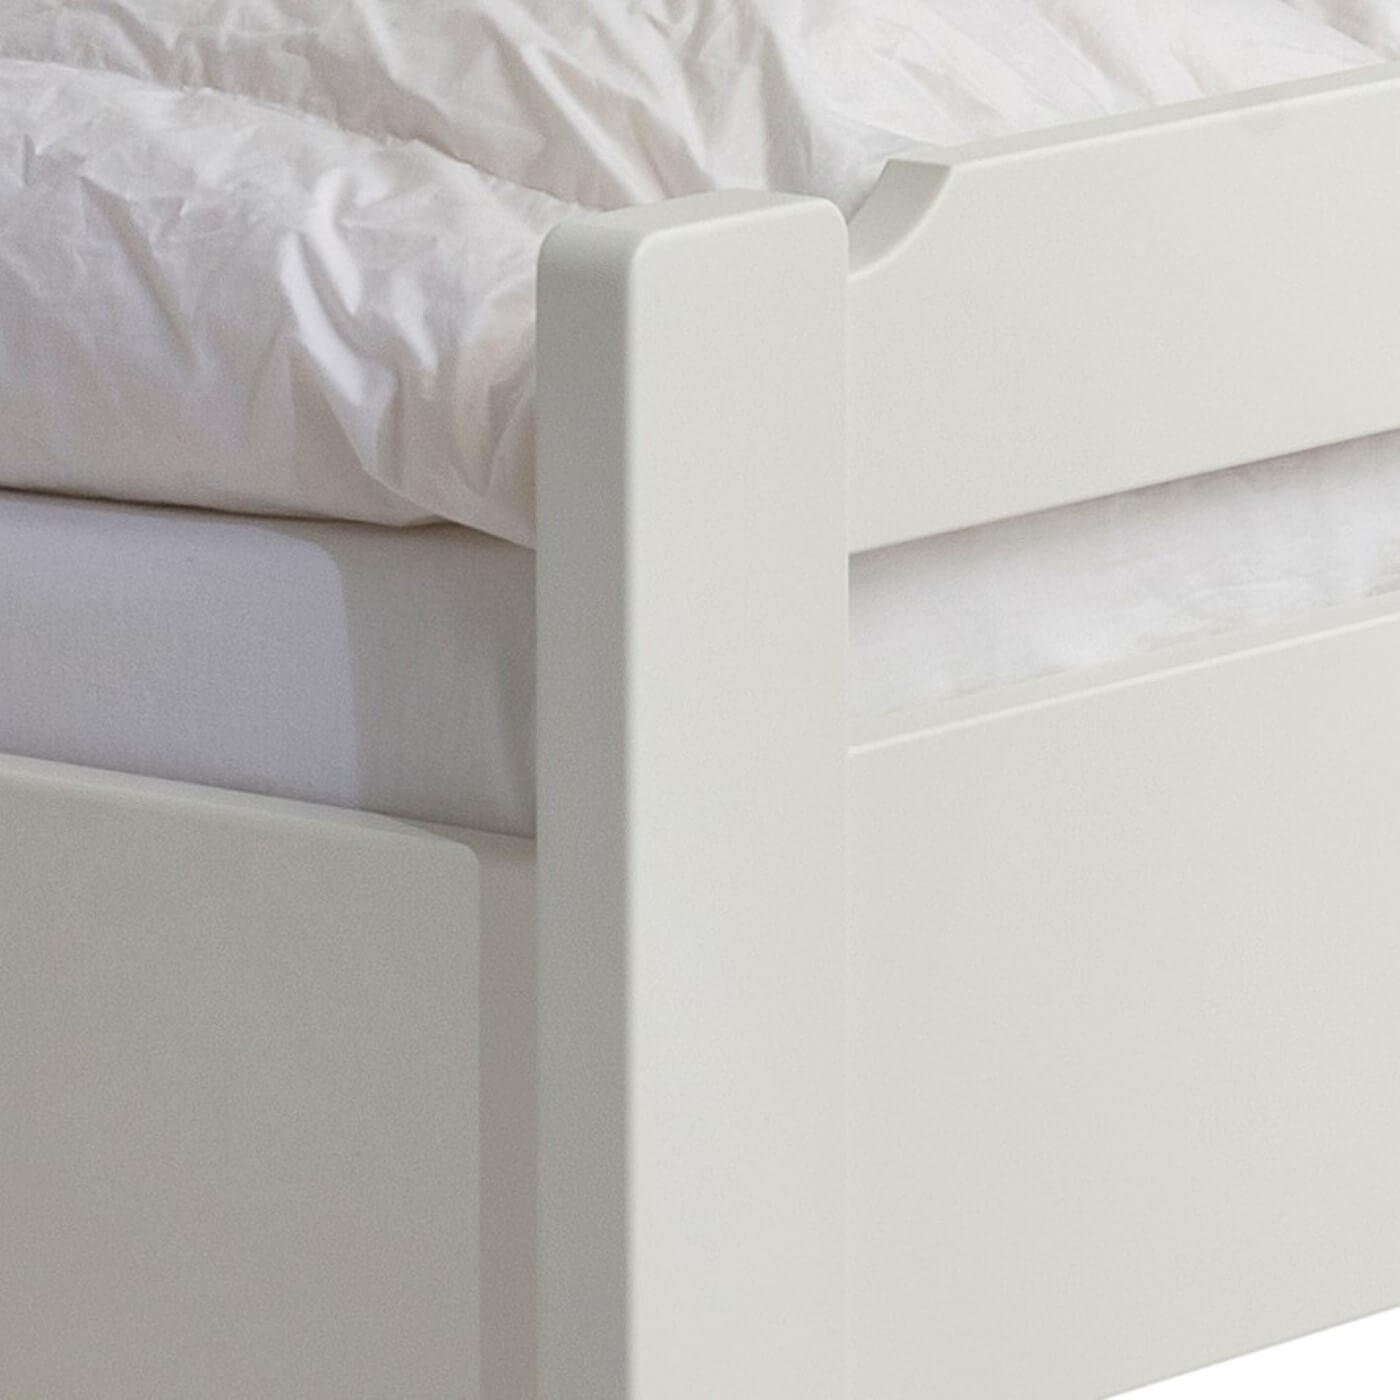 Łóżko jednoosobowe białe KUUSAMO. Zbliżenie na ręcznie robiony fragment prostego niskiego wezgłowia z litego drewna brzozy skandynawskiej lakierowanej na kolor biały mat